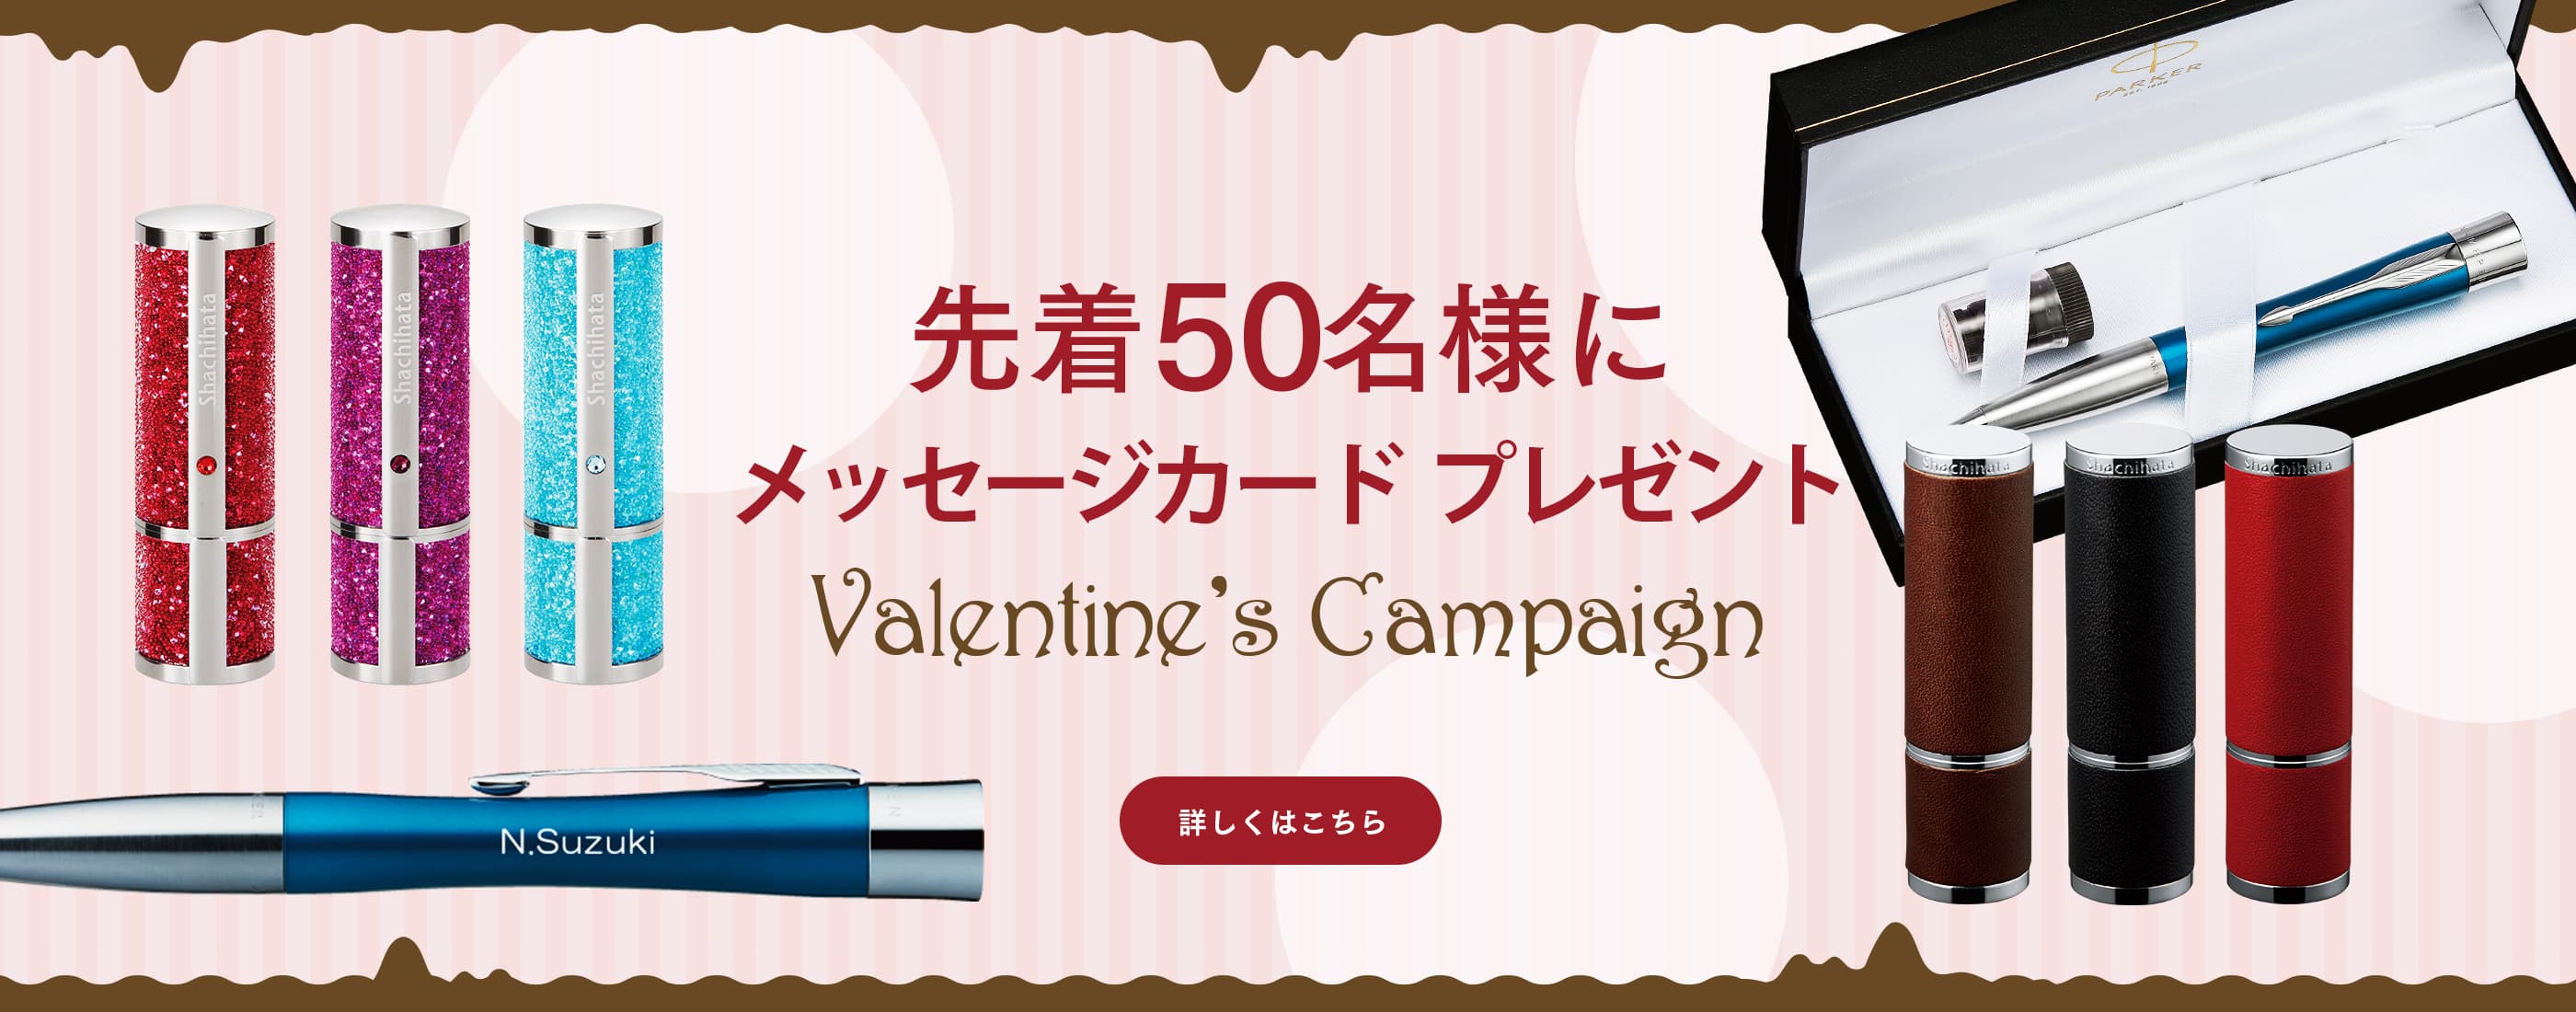 先着50名様にメッセージカードがもらえるキャンペーン開催中！ シヤチハタのバレンタインギフト特集